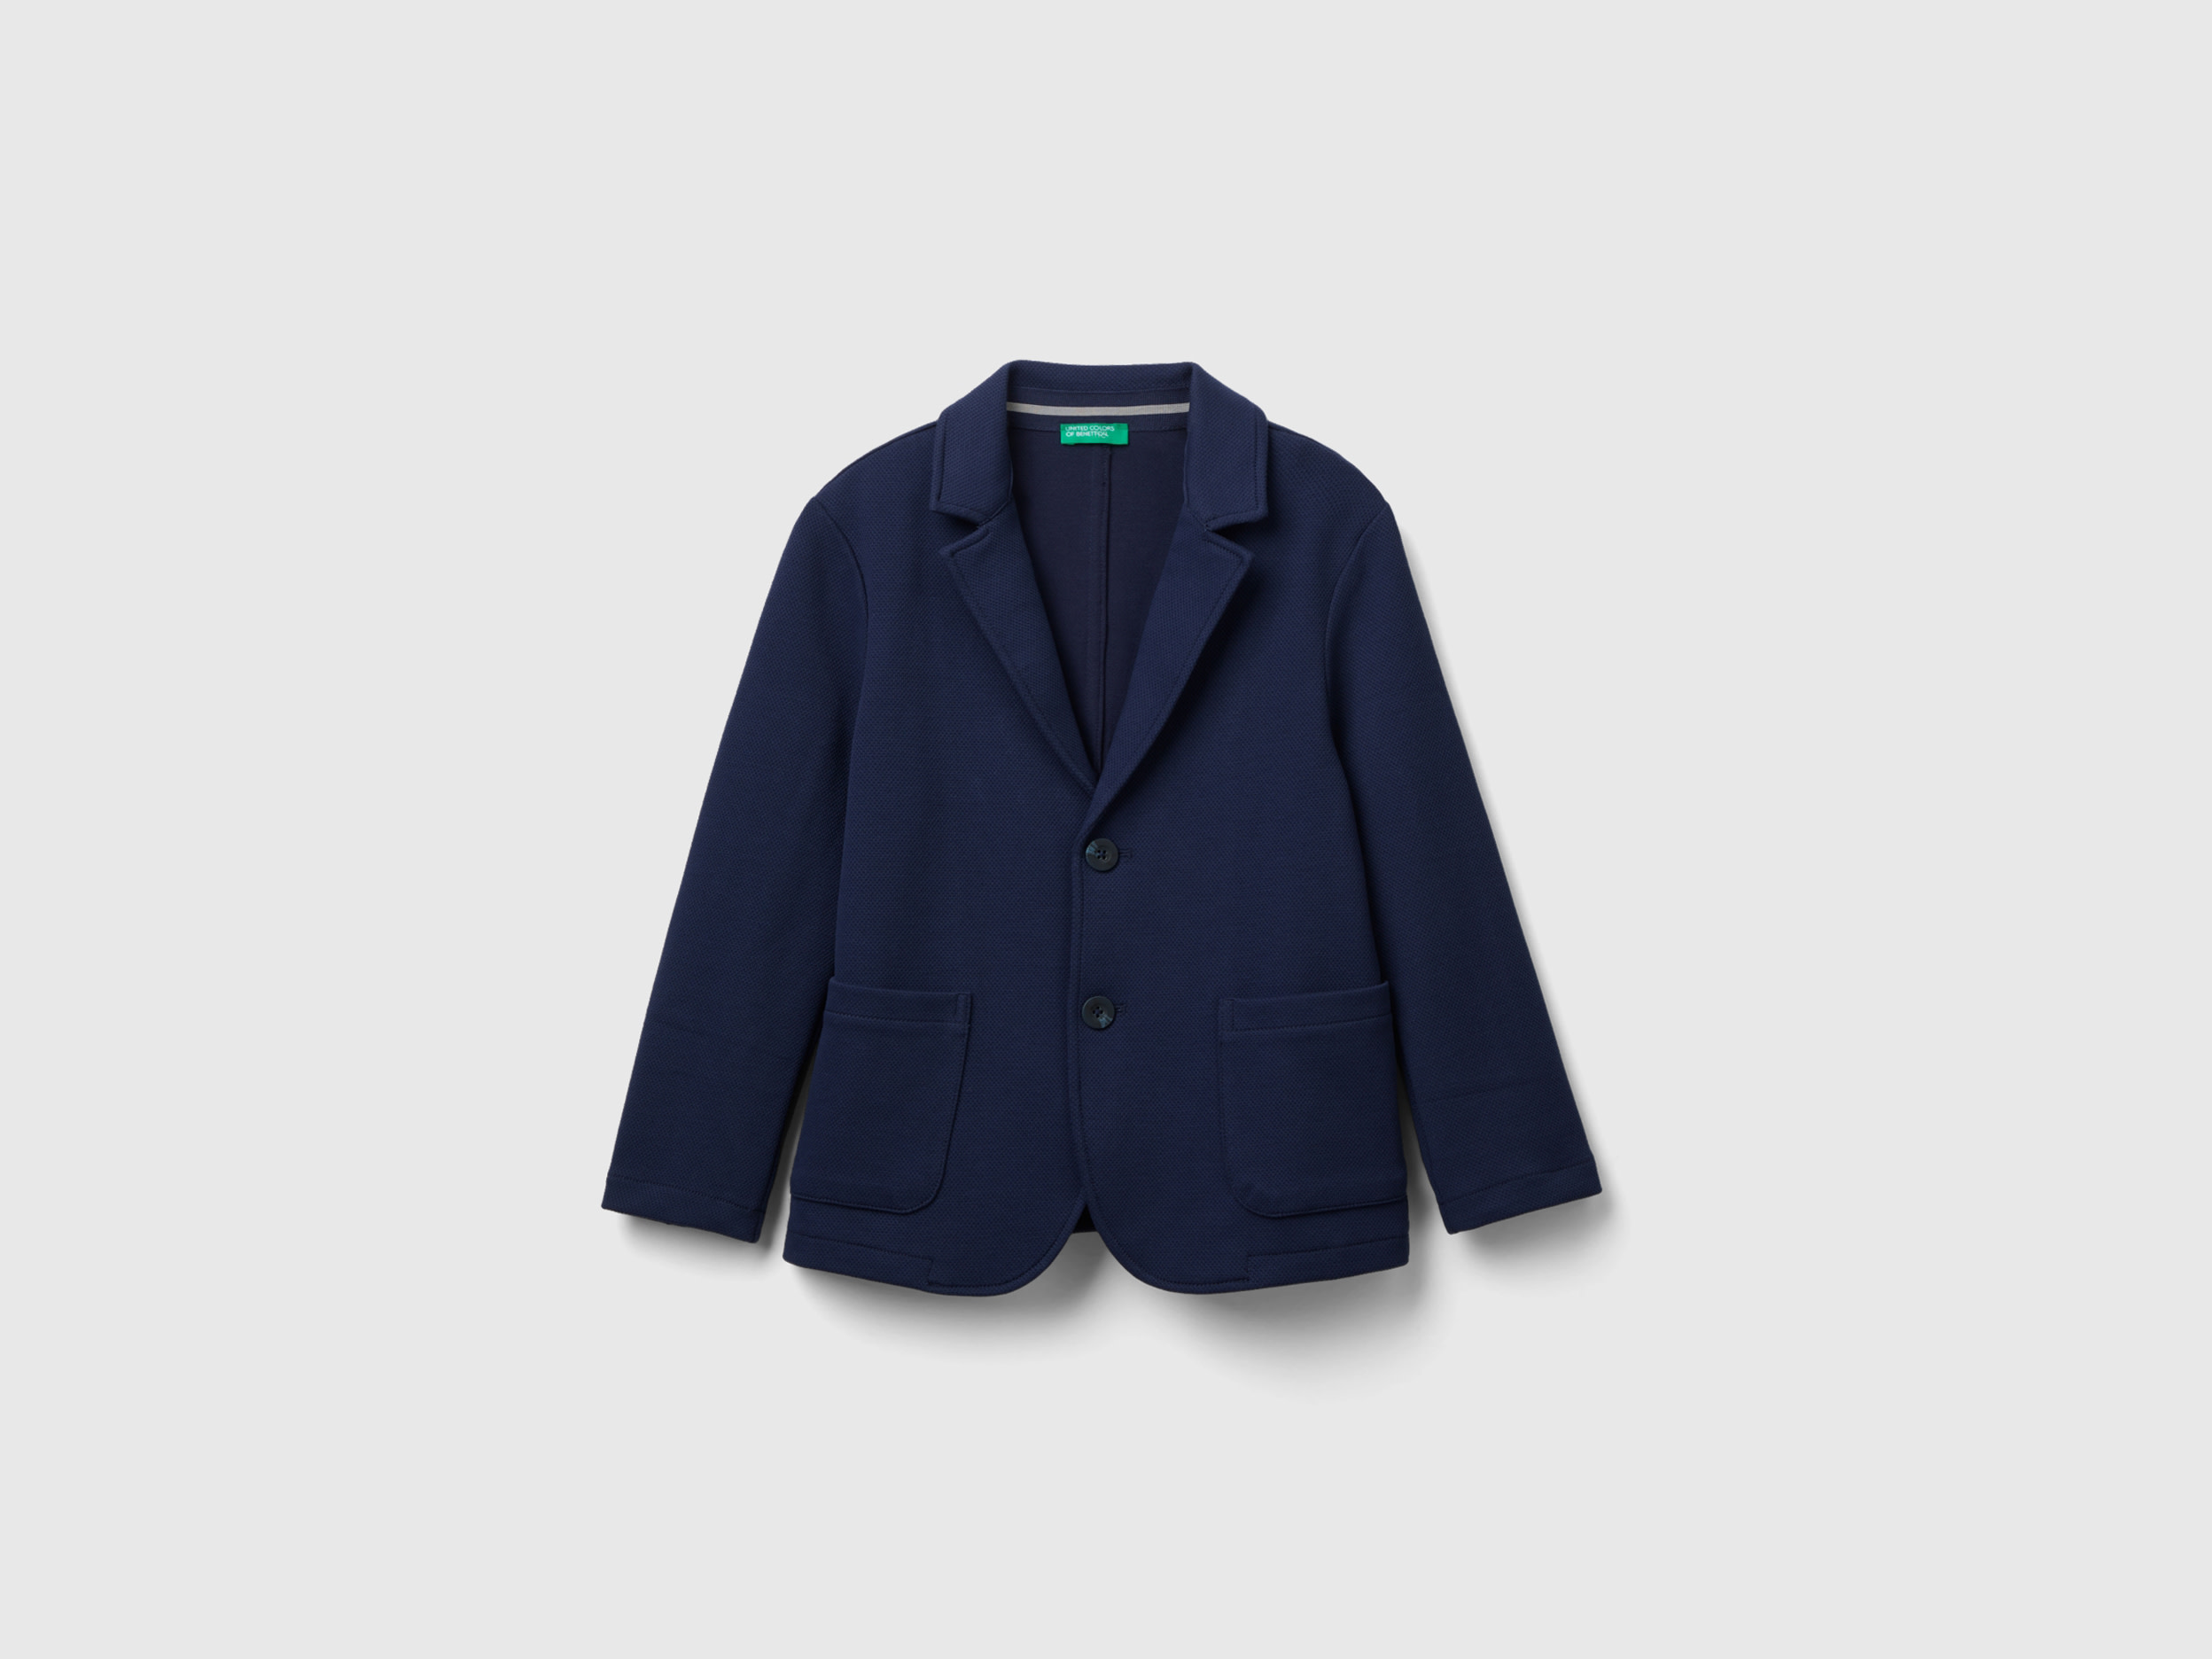 Benetton, Slim Fit Blazer With Pockets, size 3XL, Dark Blue, Kids